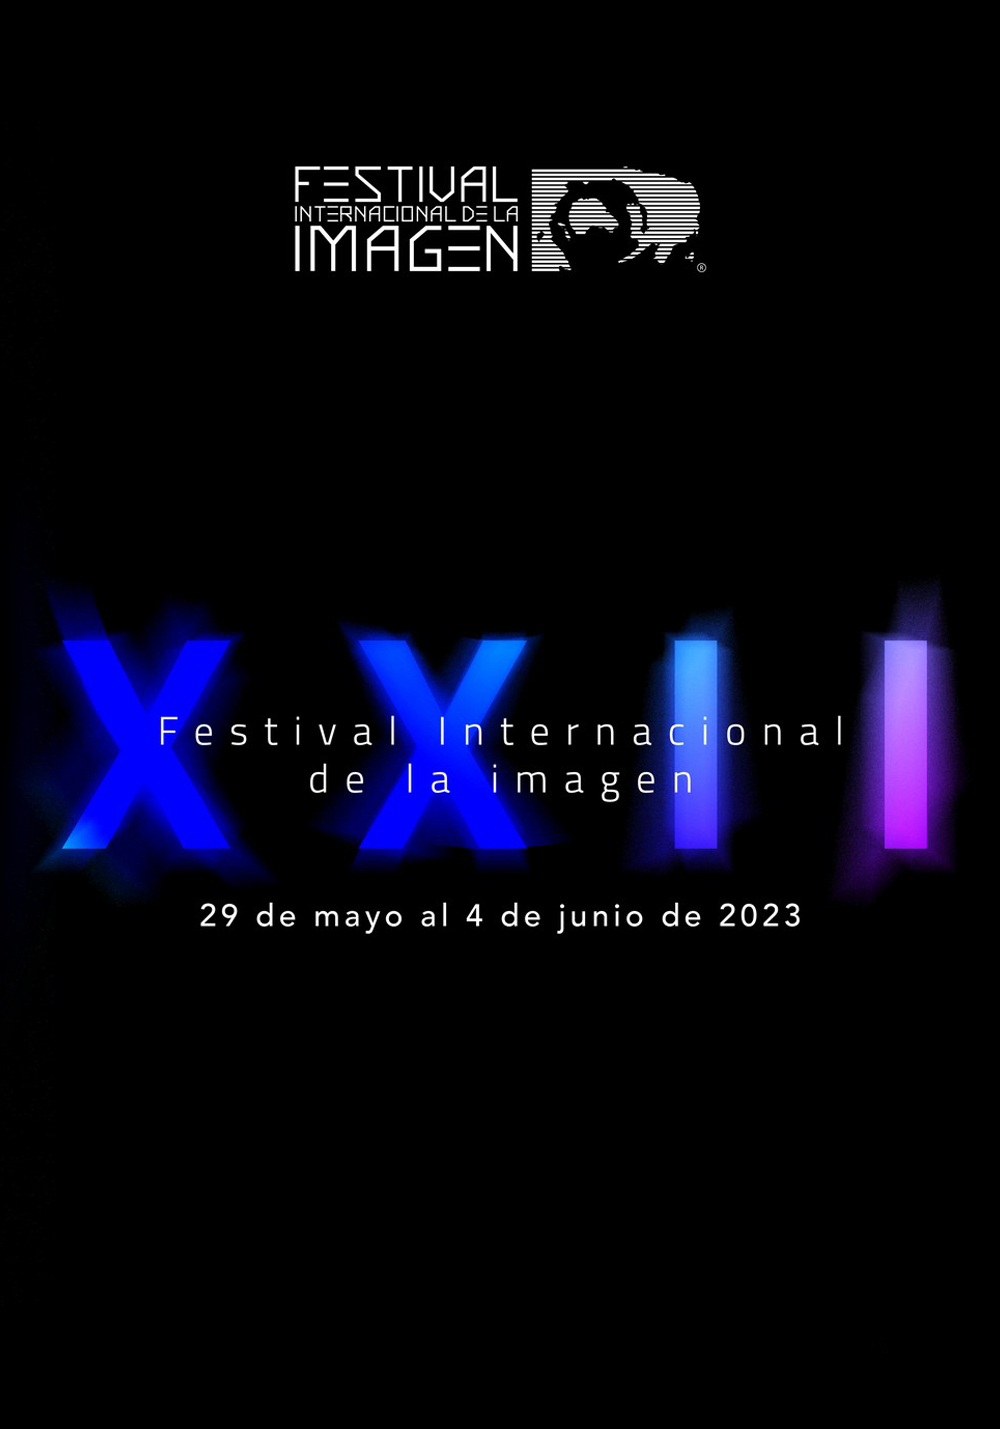 Festival Internacional de la imagen_2023.png